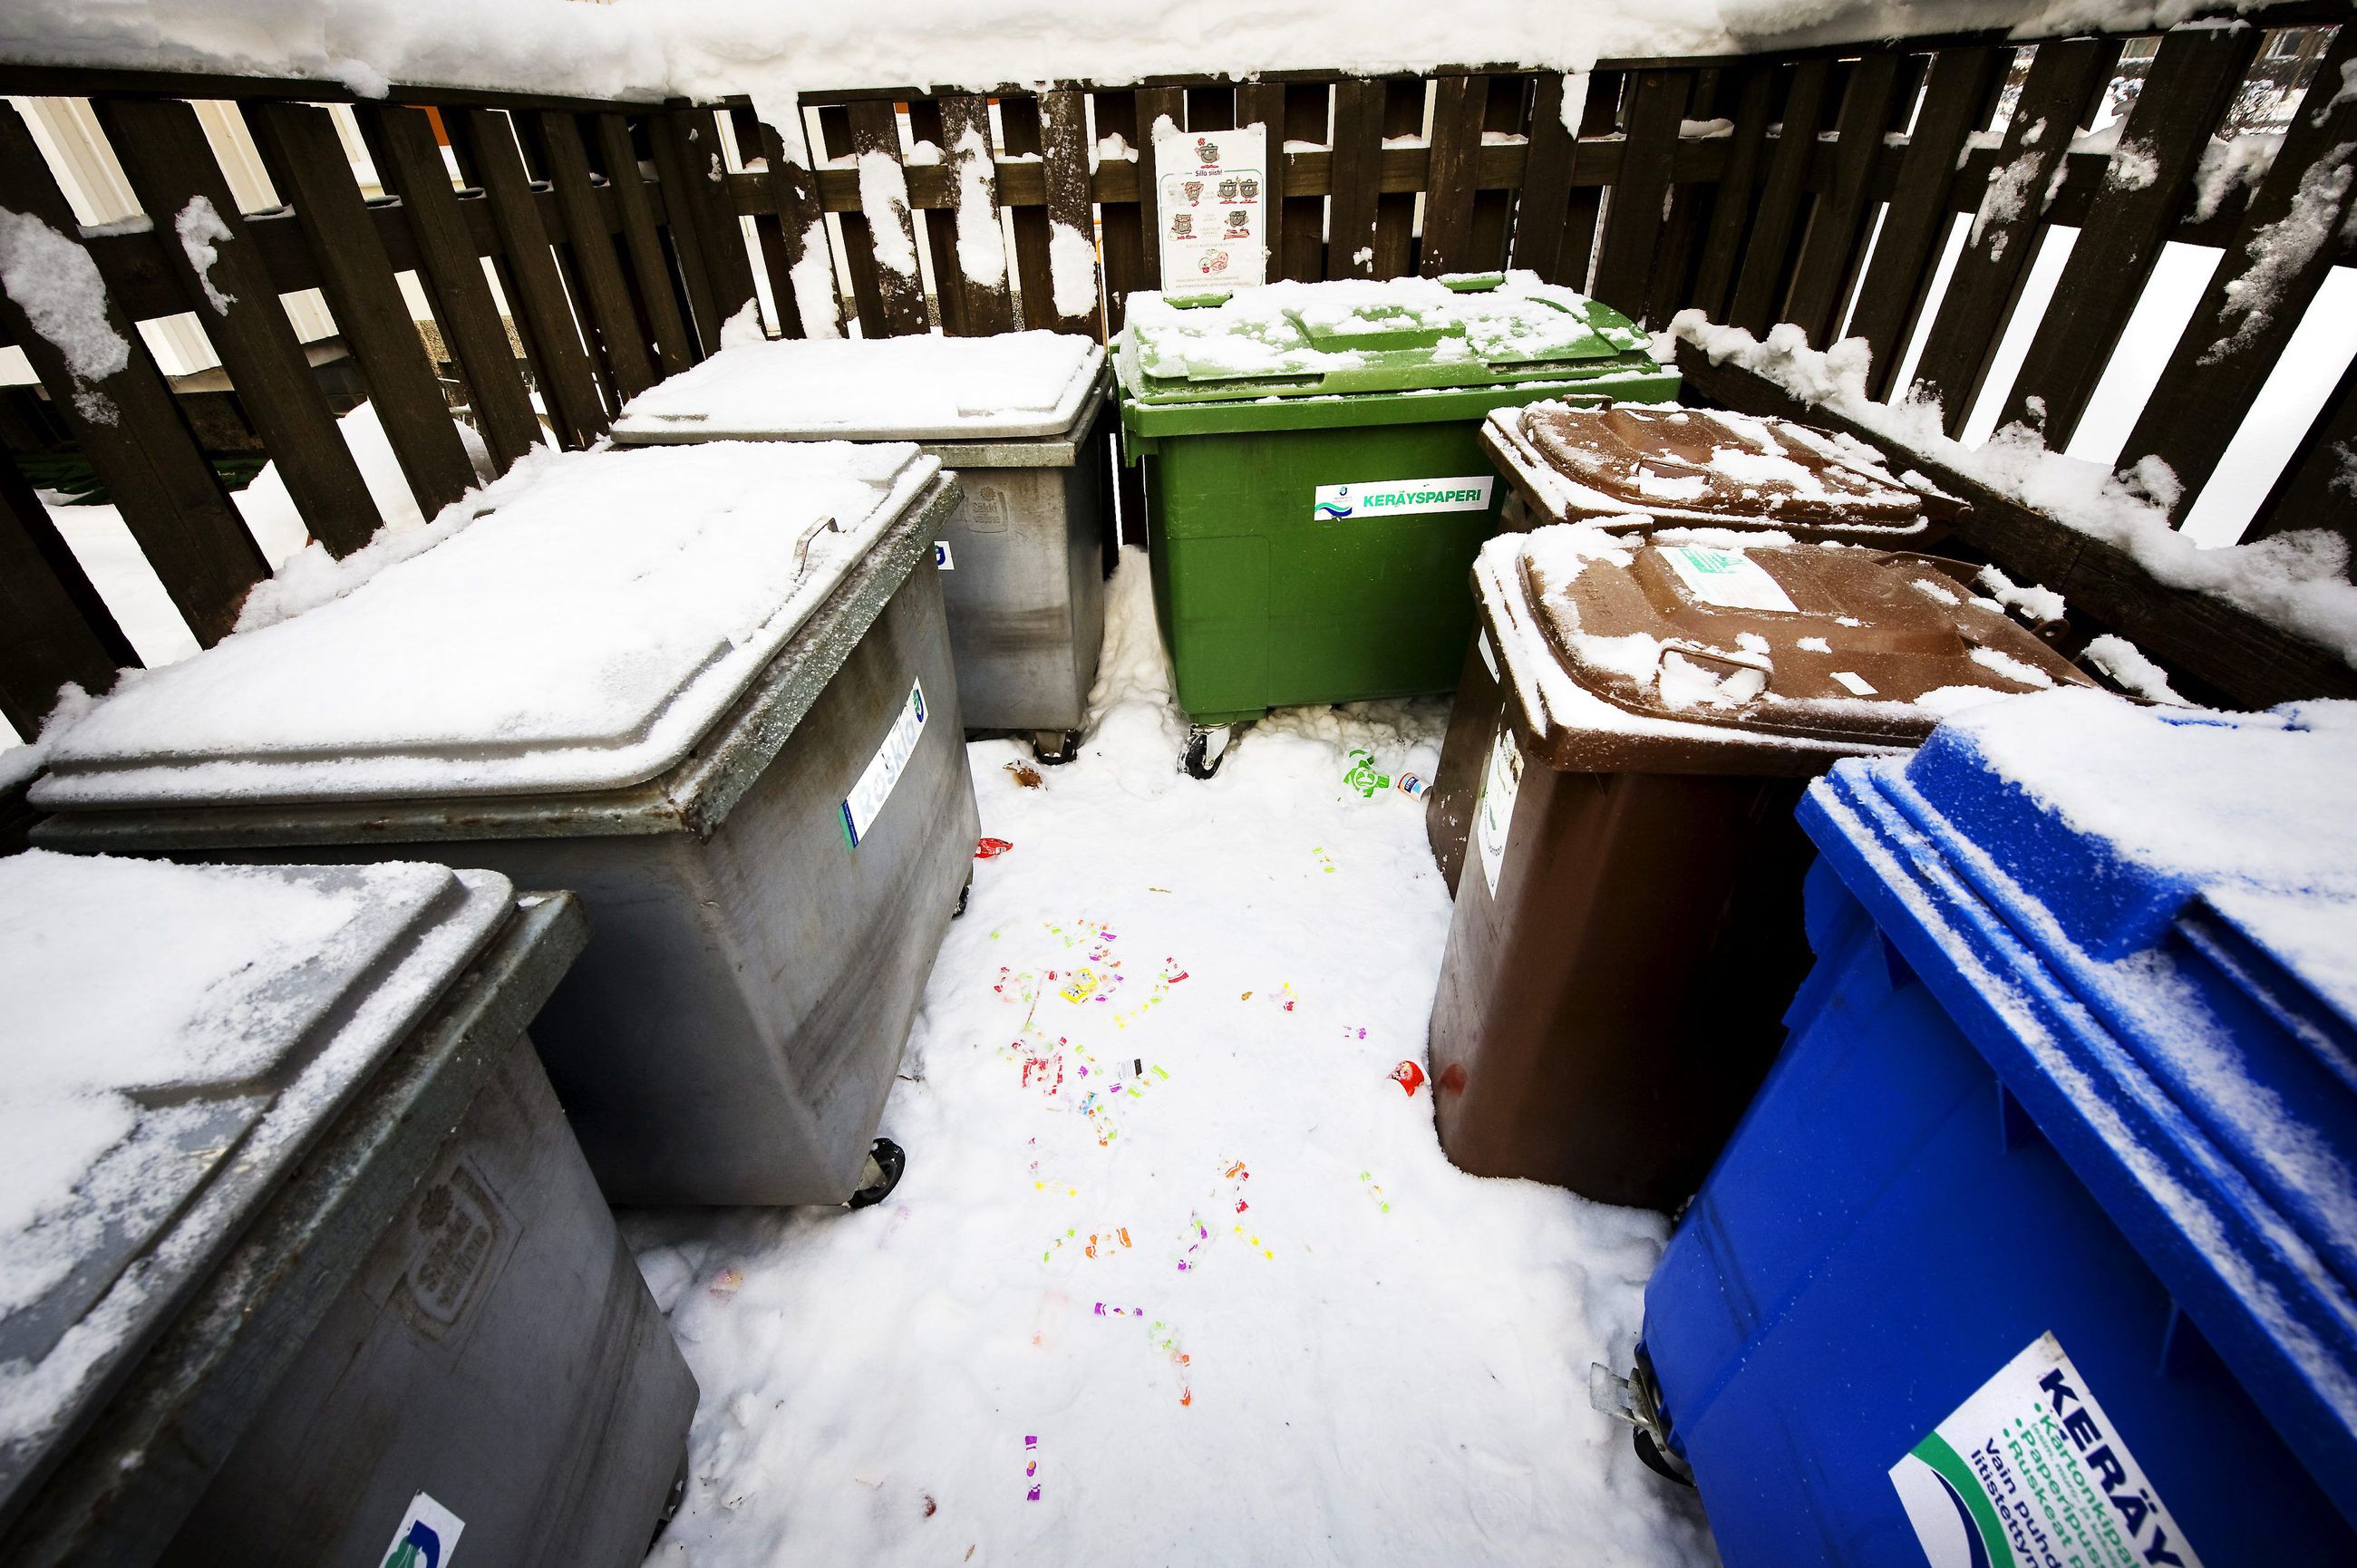 Mökkiläisen on liityttävä jätehuollon asiakkaaksi, vaikka roskat voisi  viedä kodin jäteastiaan – erityisasiantuntija kertoo syyt käytäntöön |  Kaleva